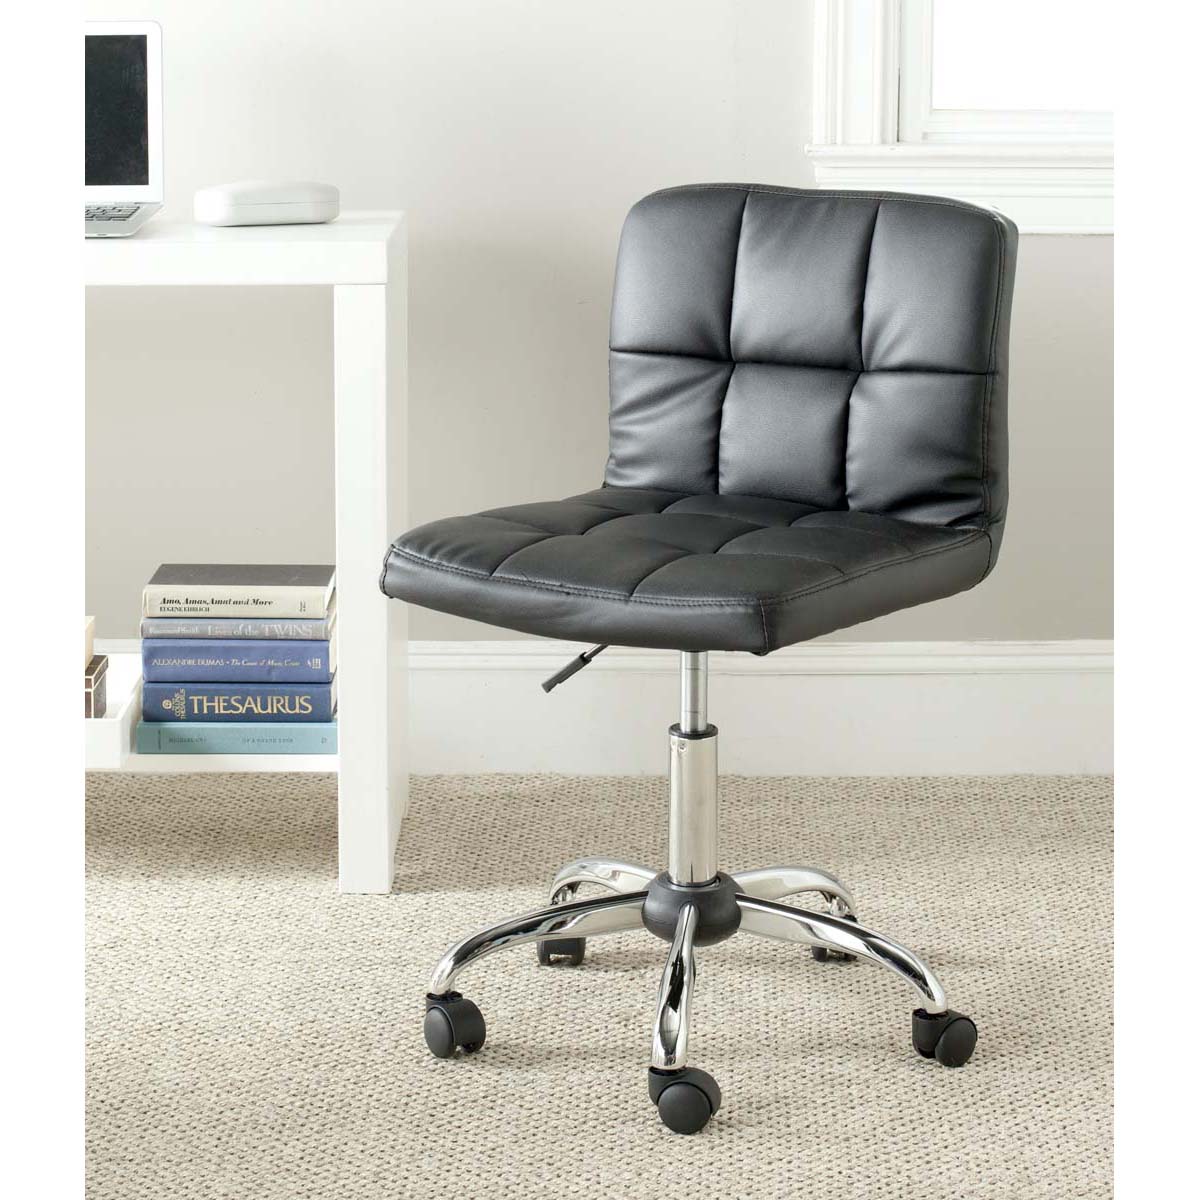 Safavieh Brunner Desk Chair , FOX8510 - Black